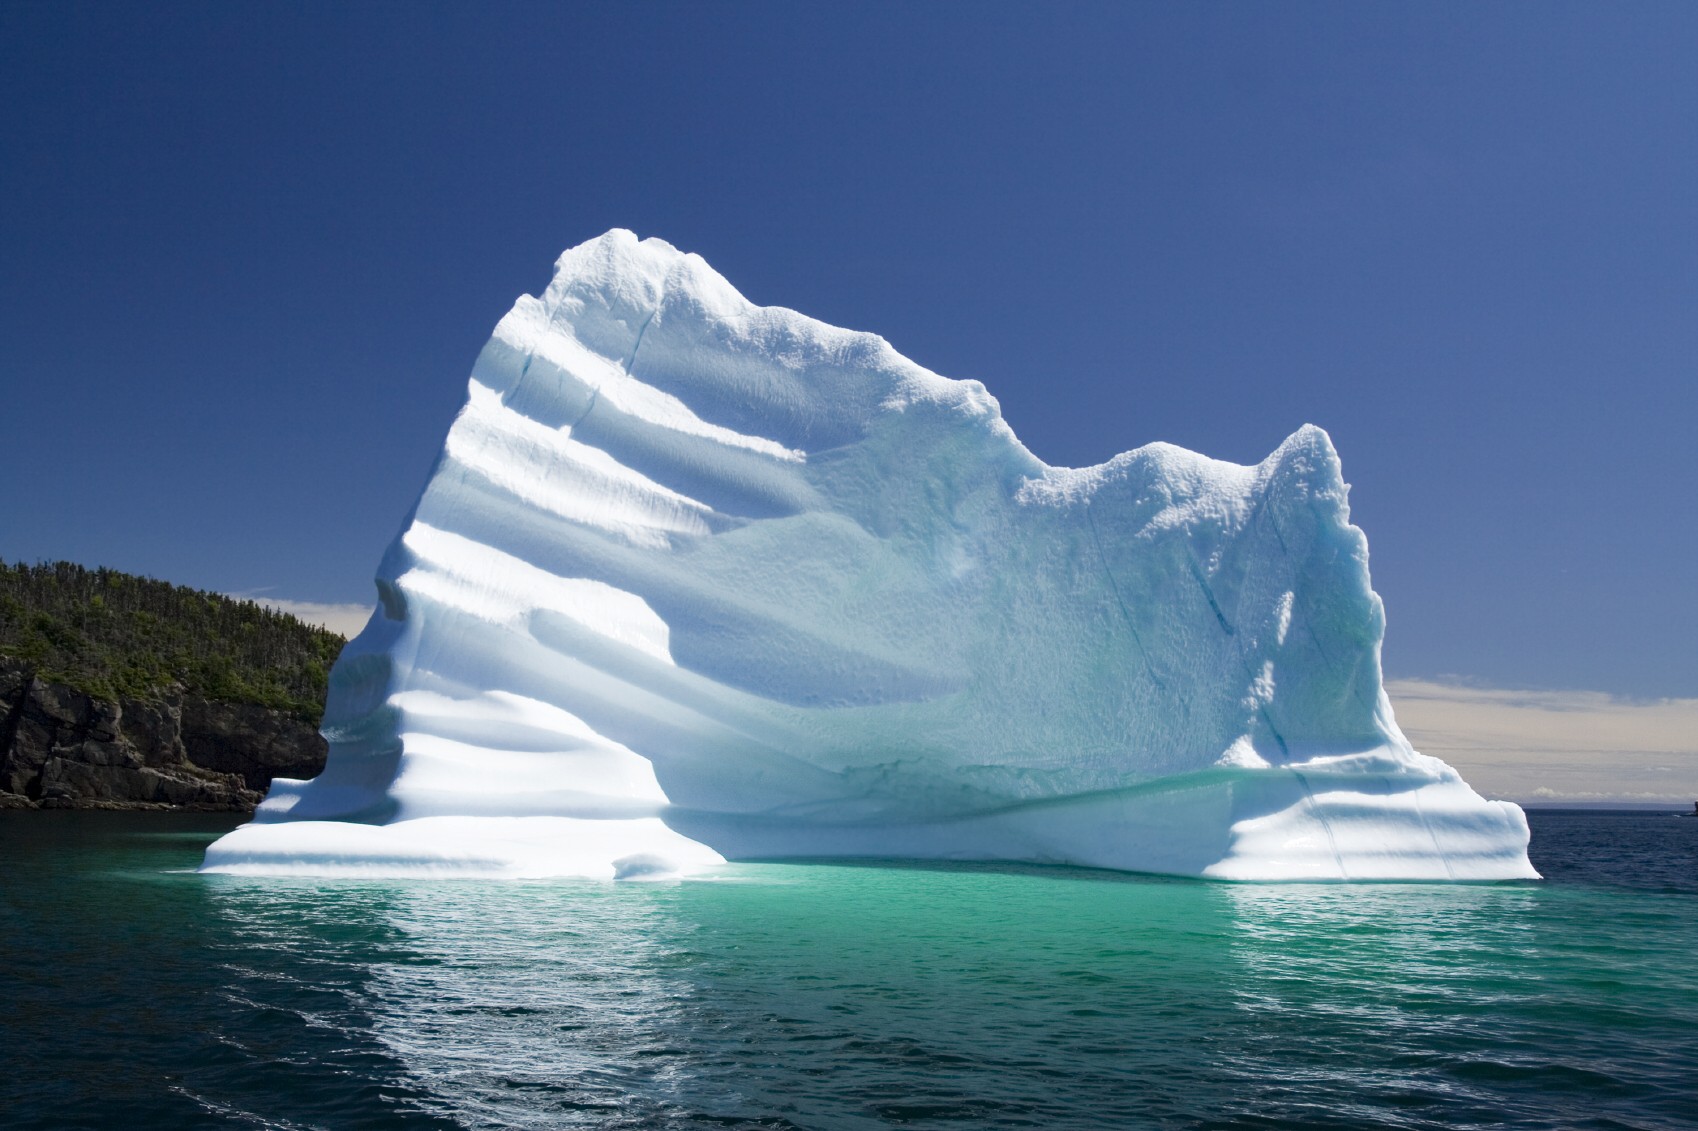 Culture - Like an Iceberg